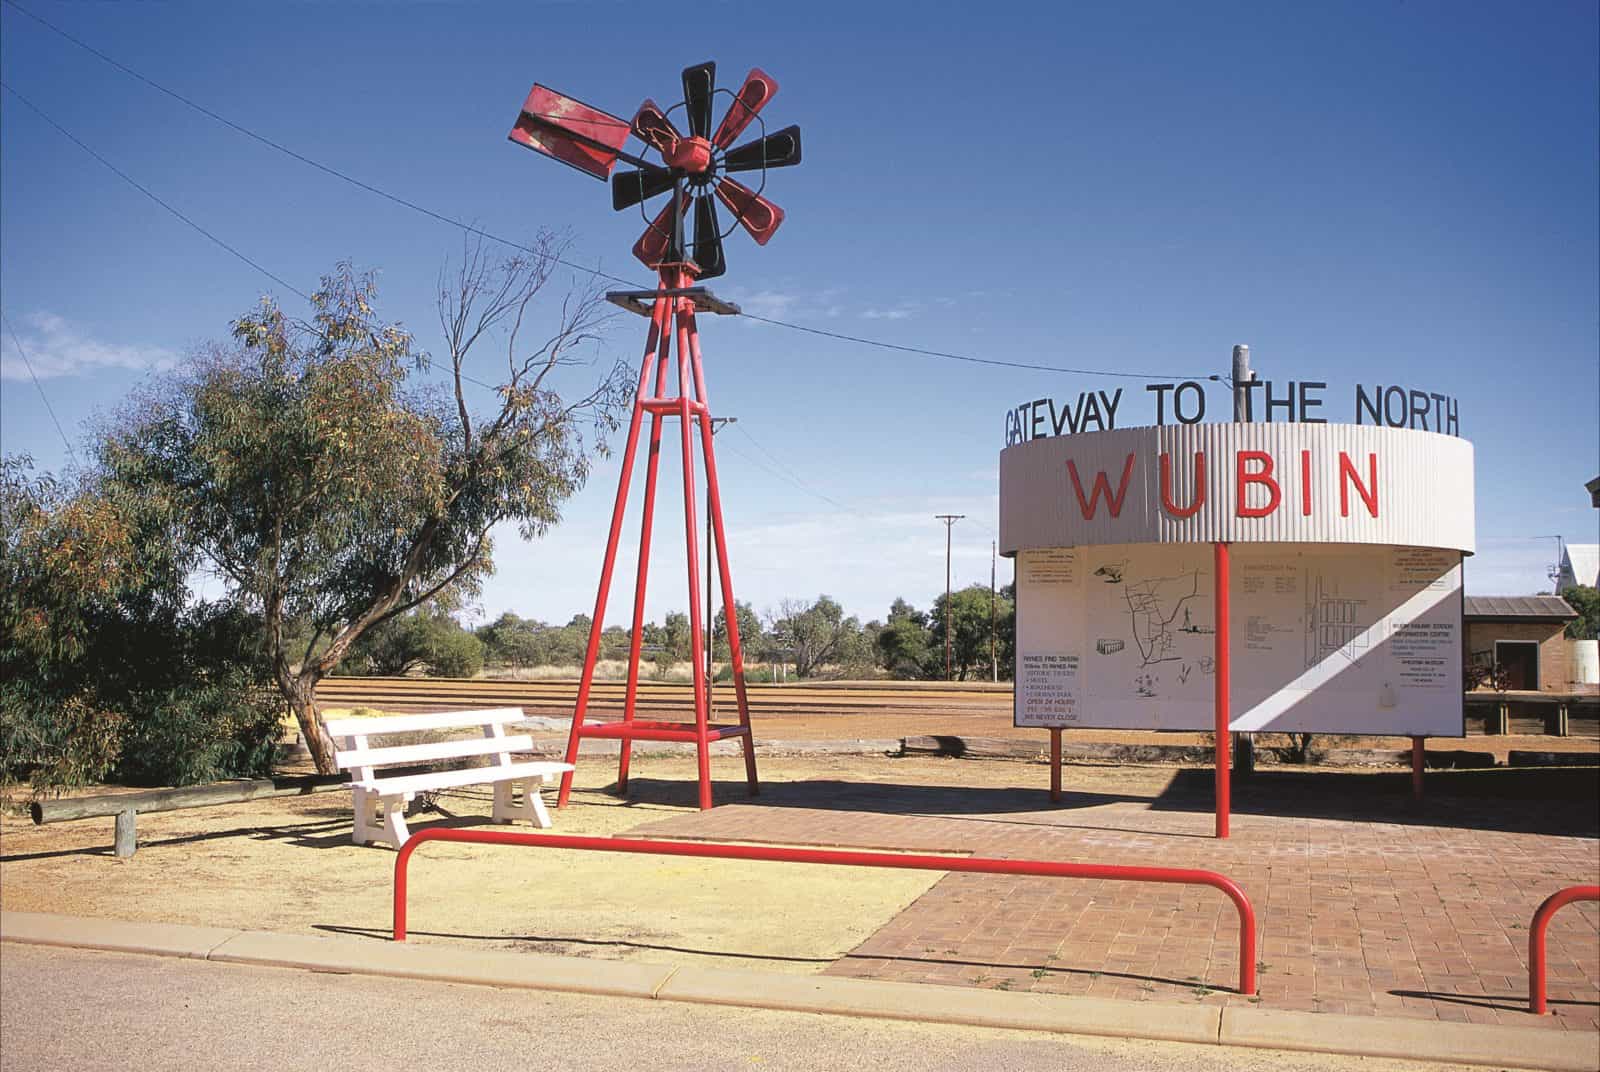 Wubin, Western Australia